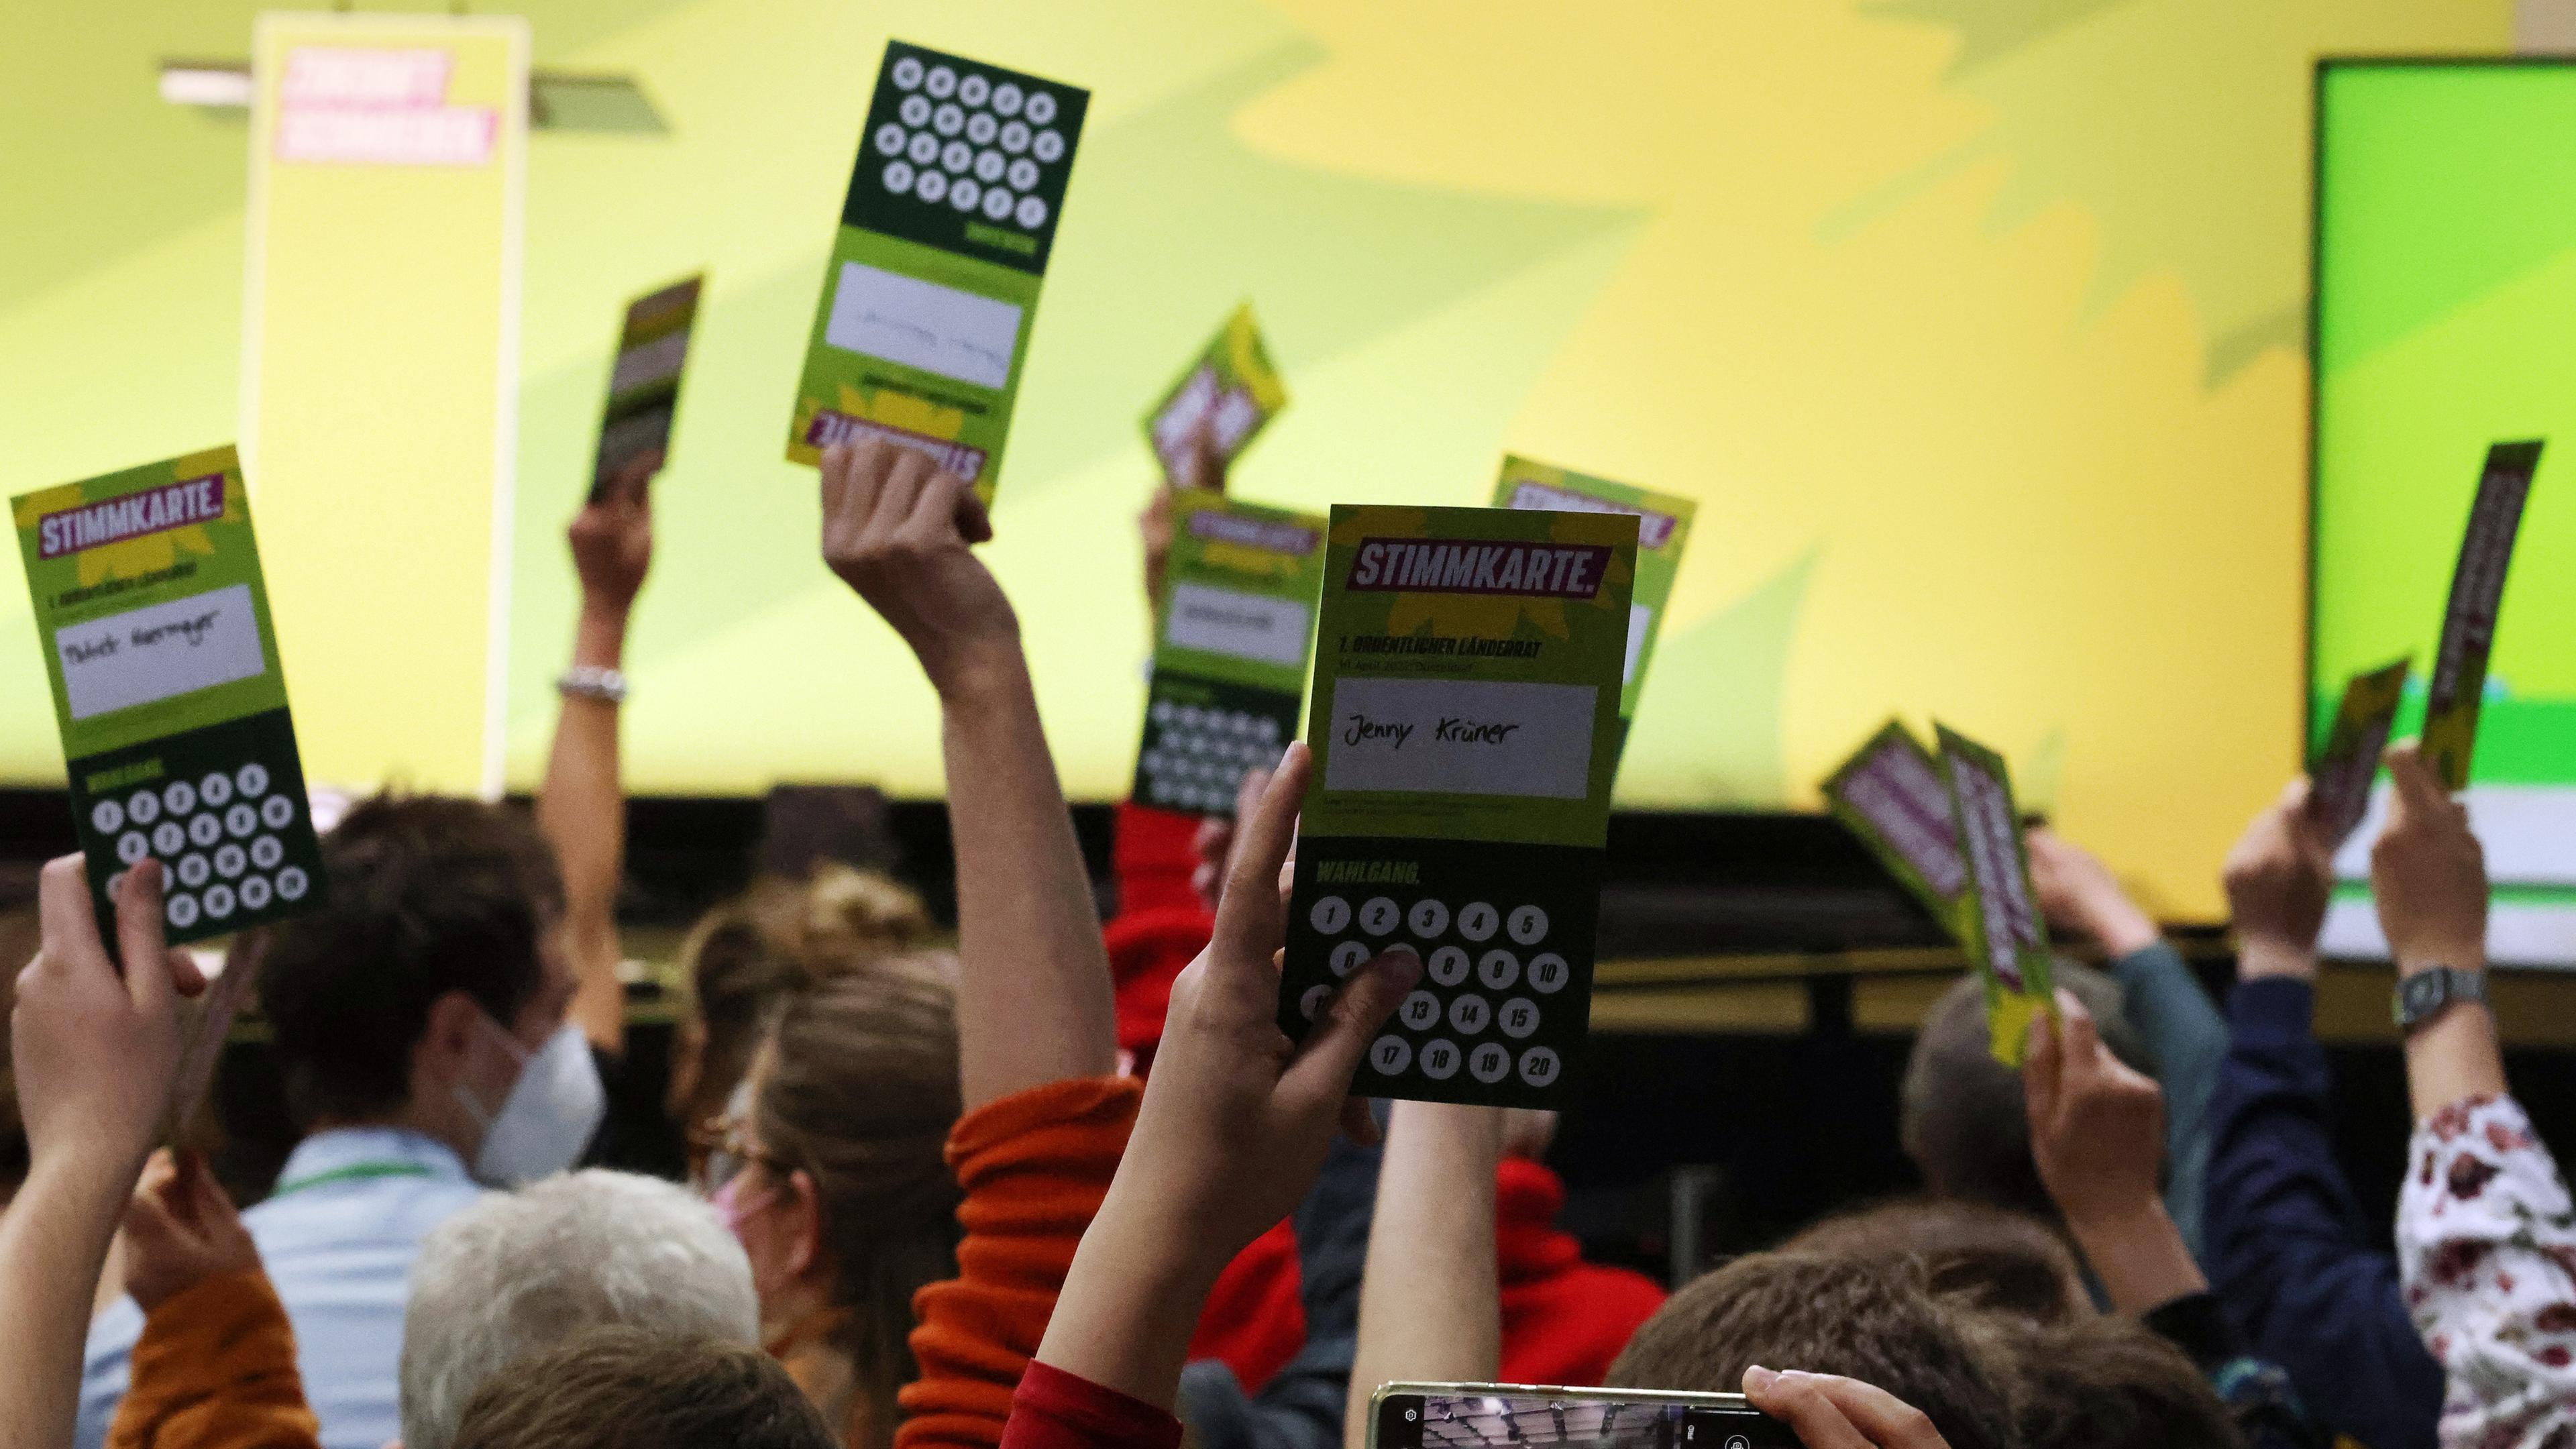 Düsseldorf, 30.04.2022: Hände die grüne Stimmkarten in die Luft halten